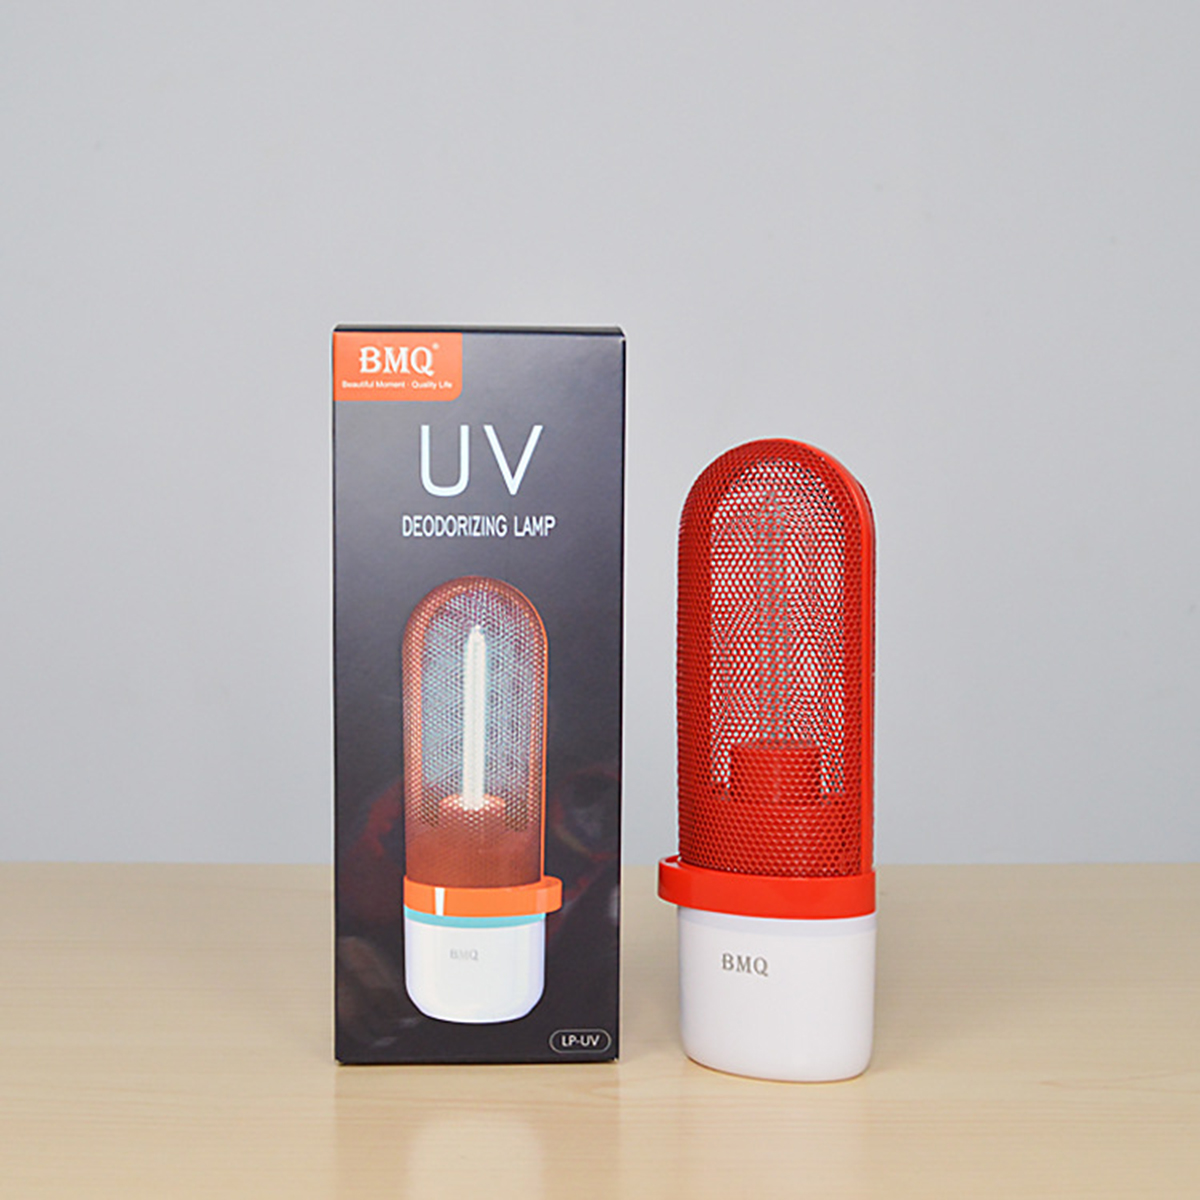 Ultraviolet-Ozone-Sterilization-UV-Lamp-Portable-Disinfection-Lighting-Mite-Kill-DC5V-UV-Sterilizer--1652877-2